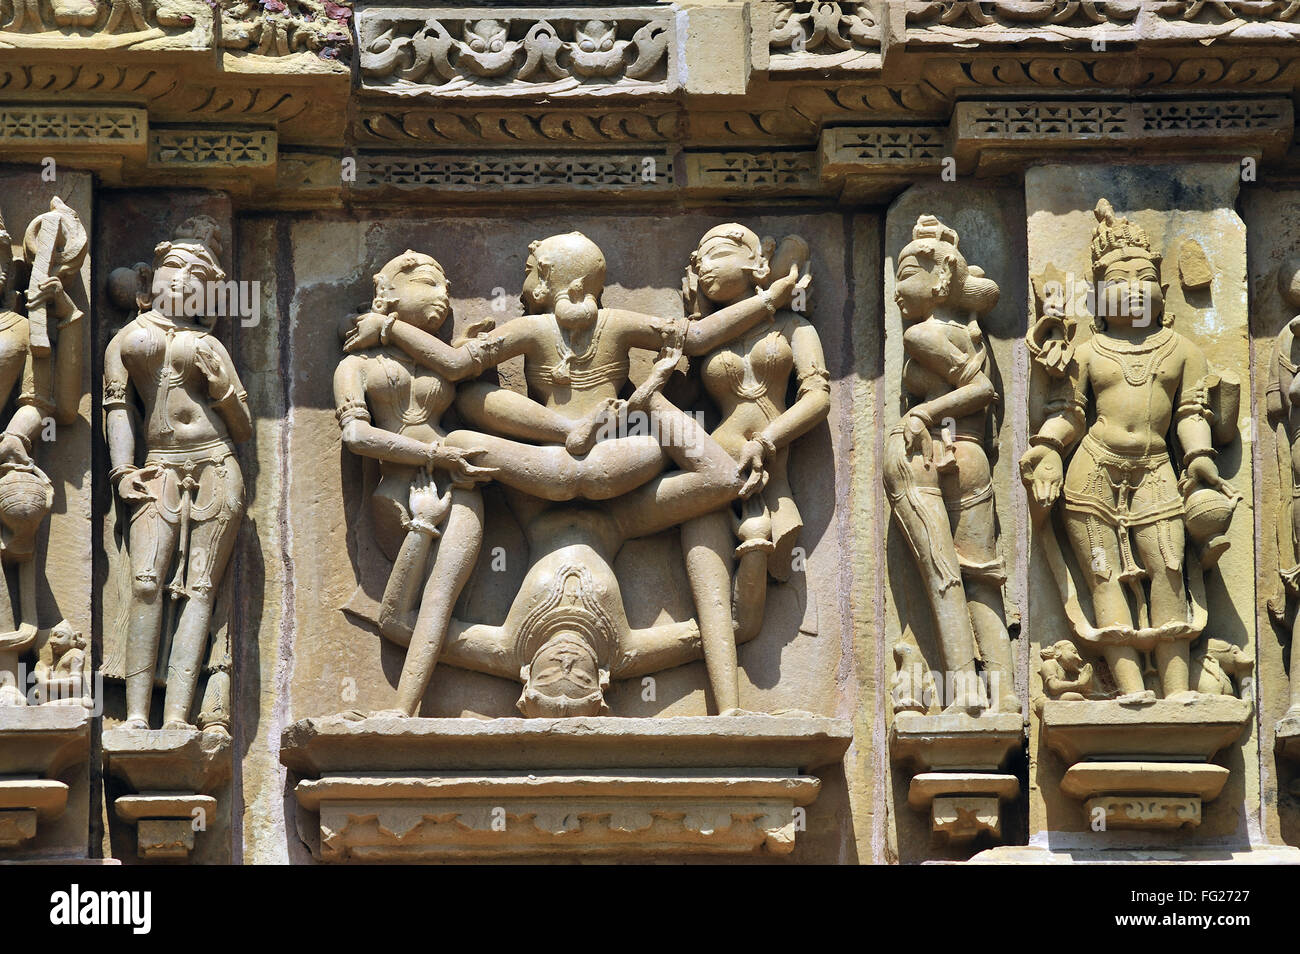 Khajuraho mithuna couple la sculpture érotique sur le mur du temple Lakshmana Temple Lakshman Khajuraho Madhya Pradesh Inde Asie Banque D'Images